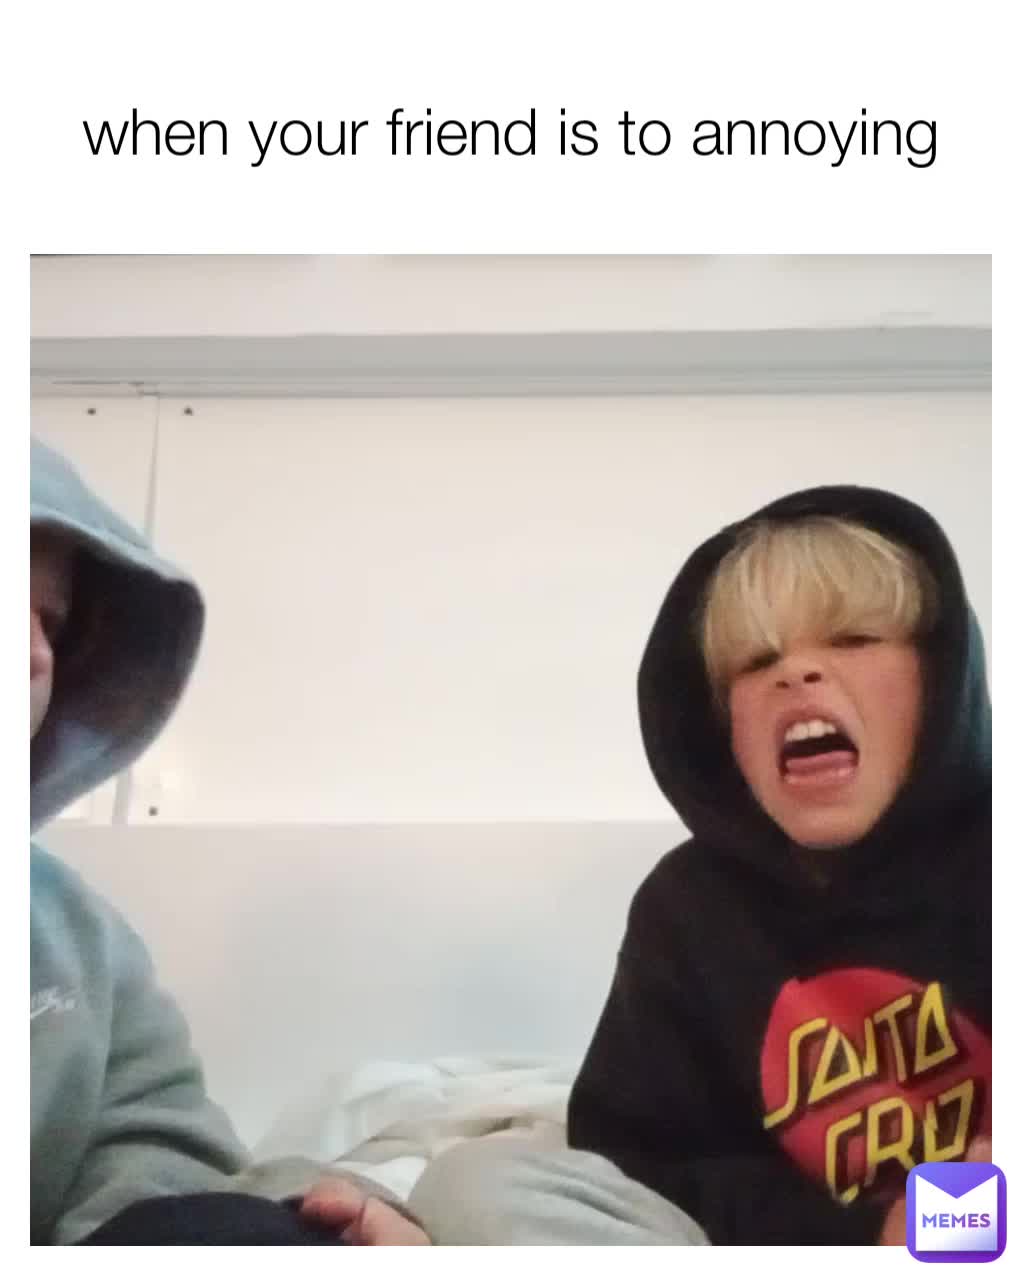 annoying little kid meme